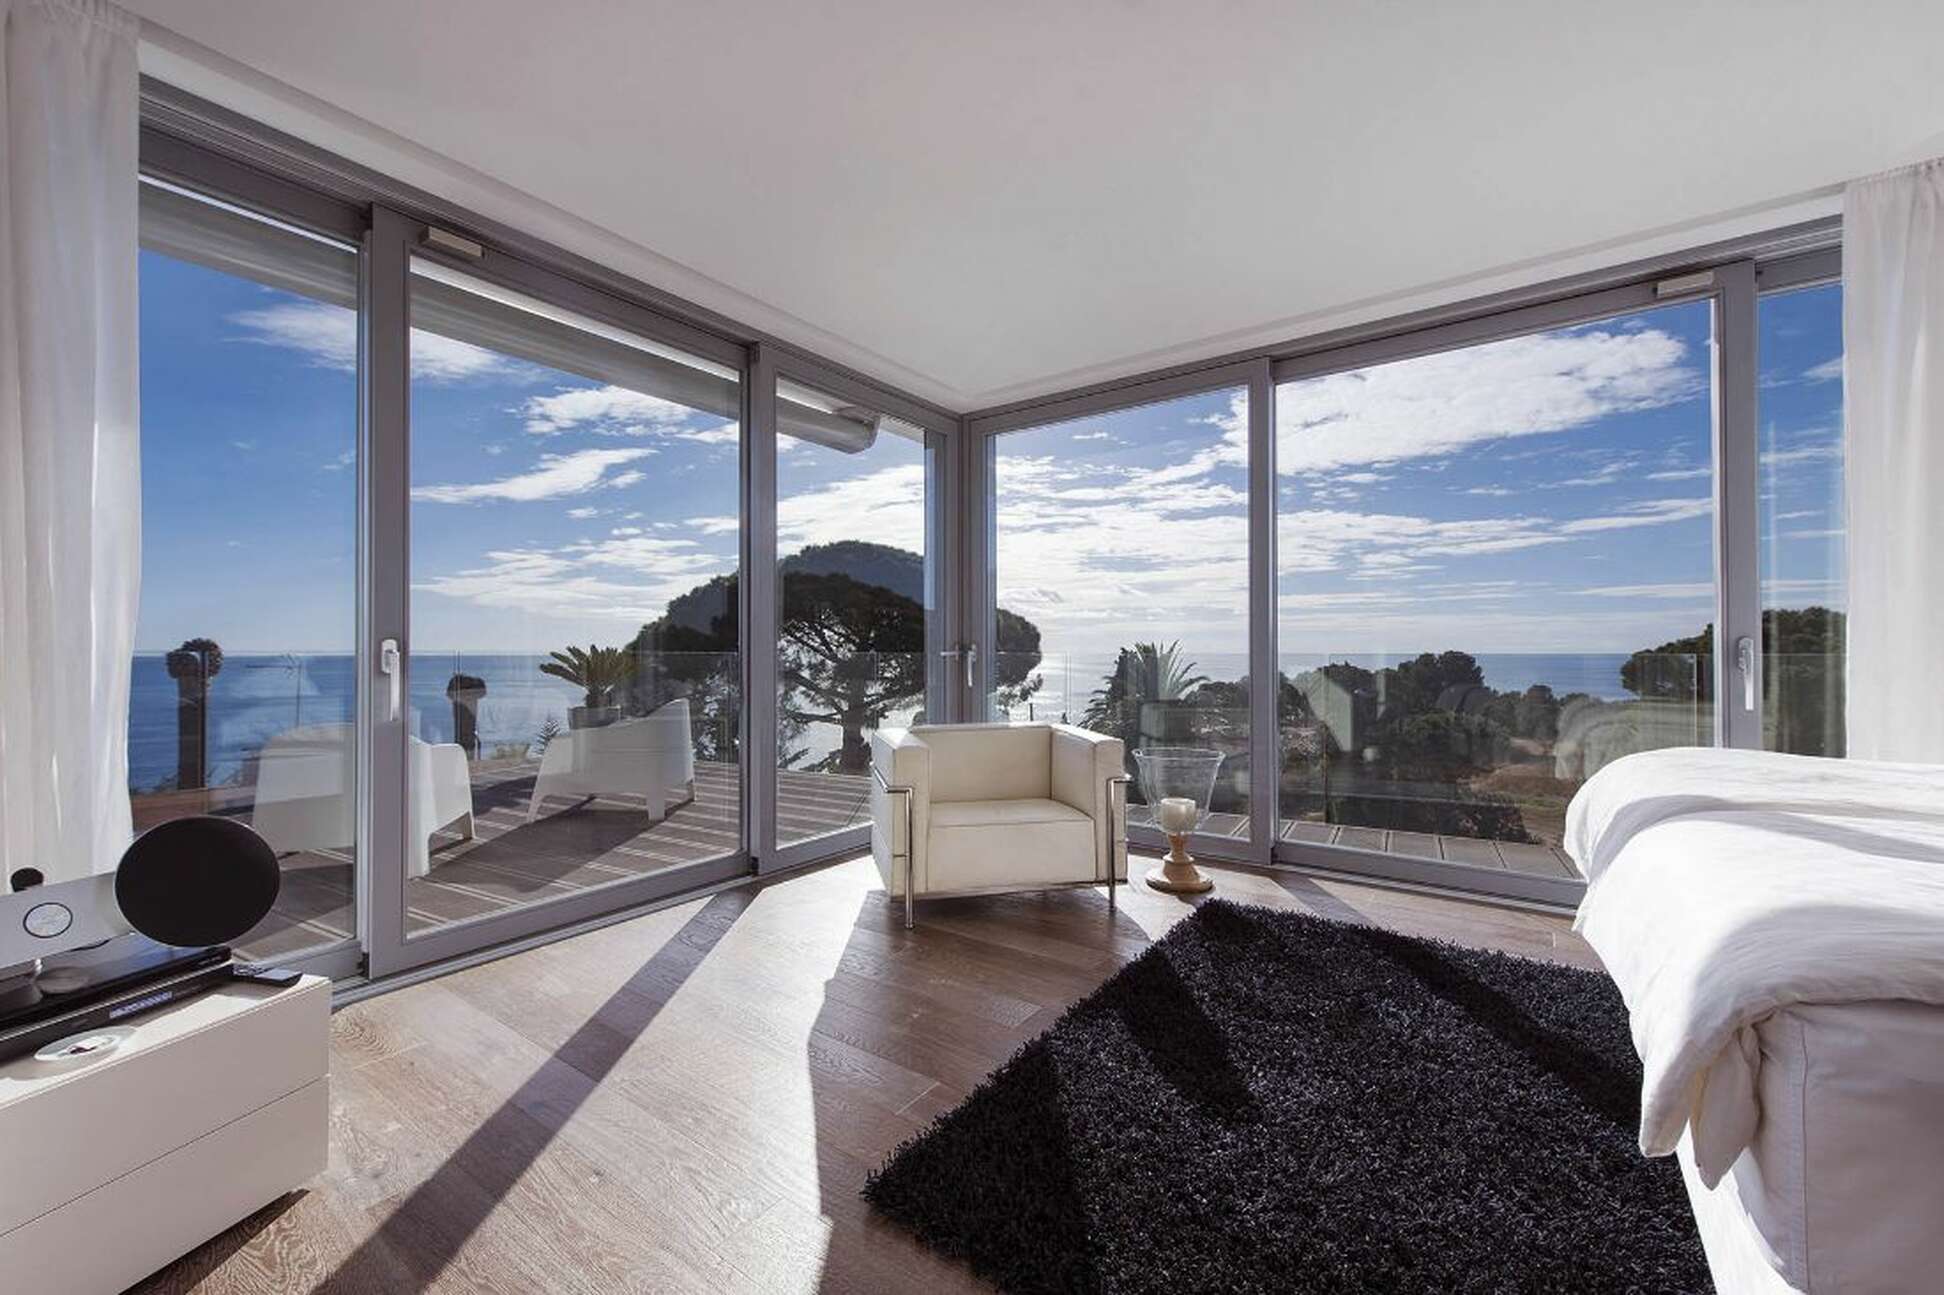 Maison exclusive avec vue imprenable sur la mer à Tossa de Mar, disponible dès maintenant.